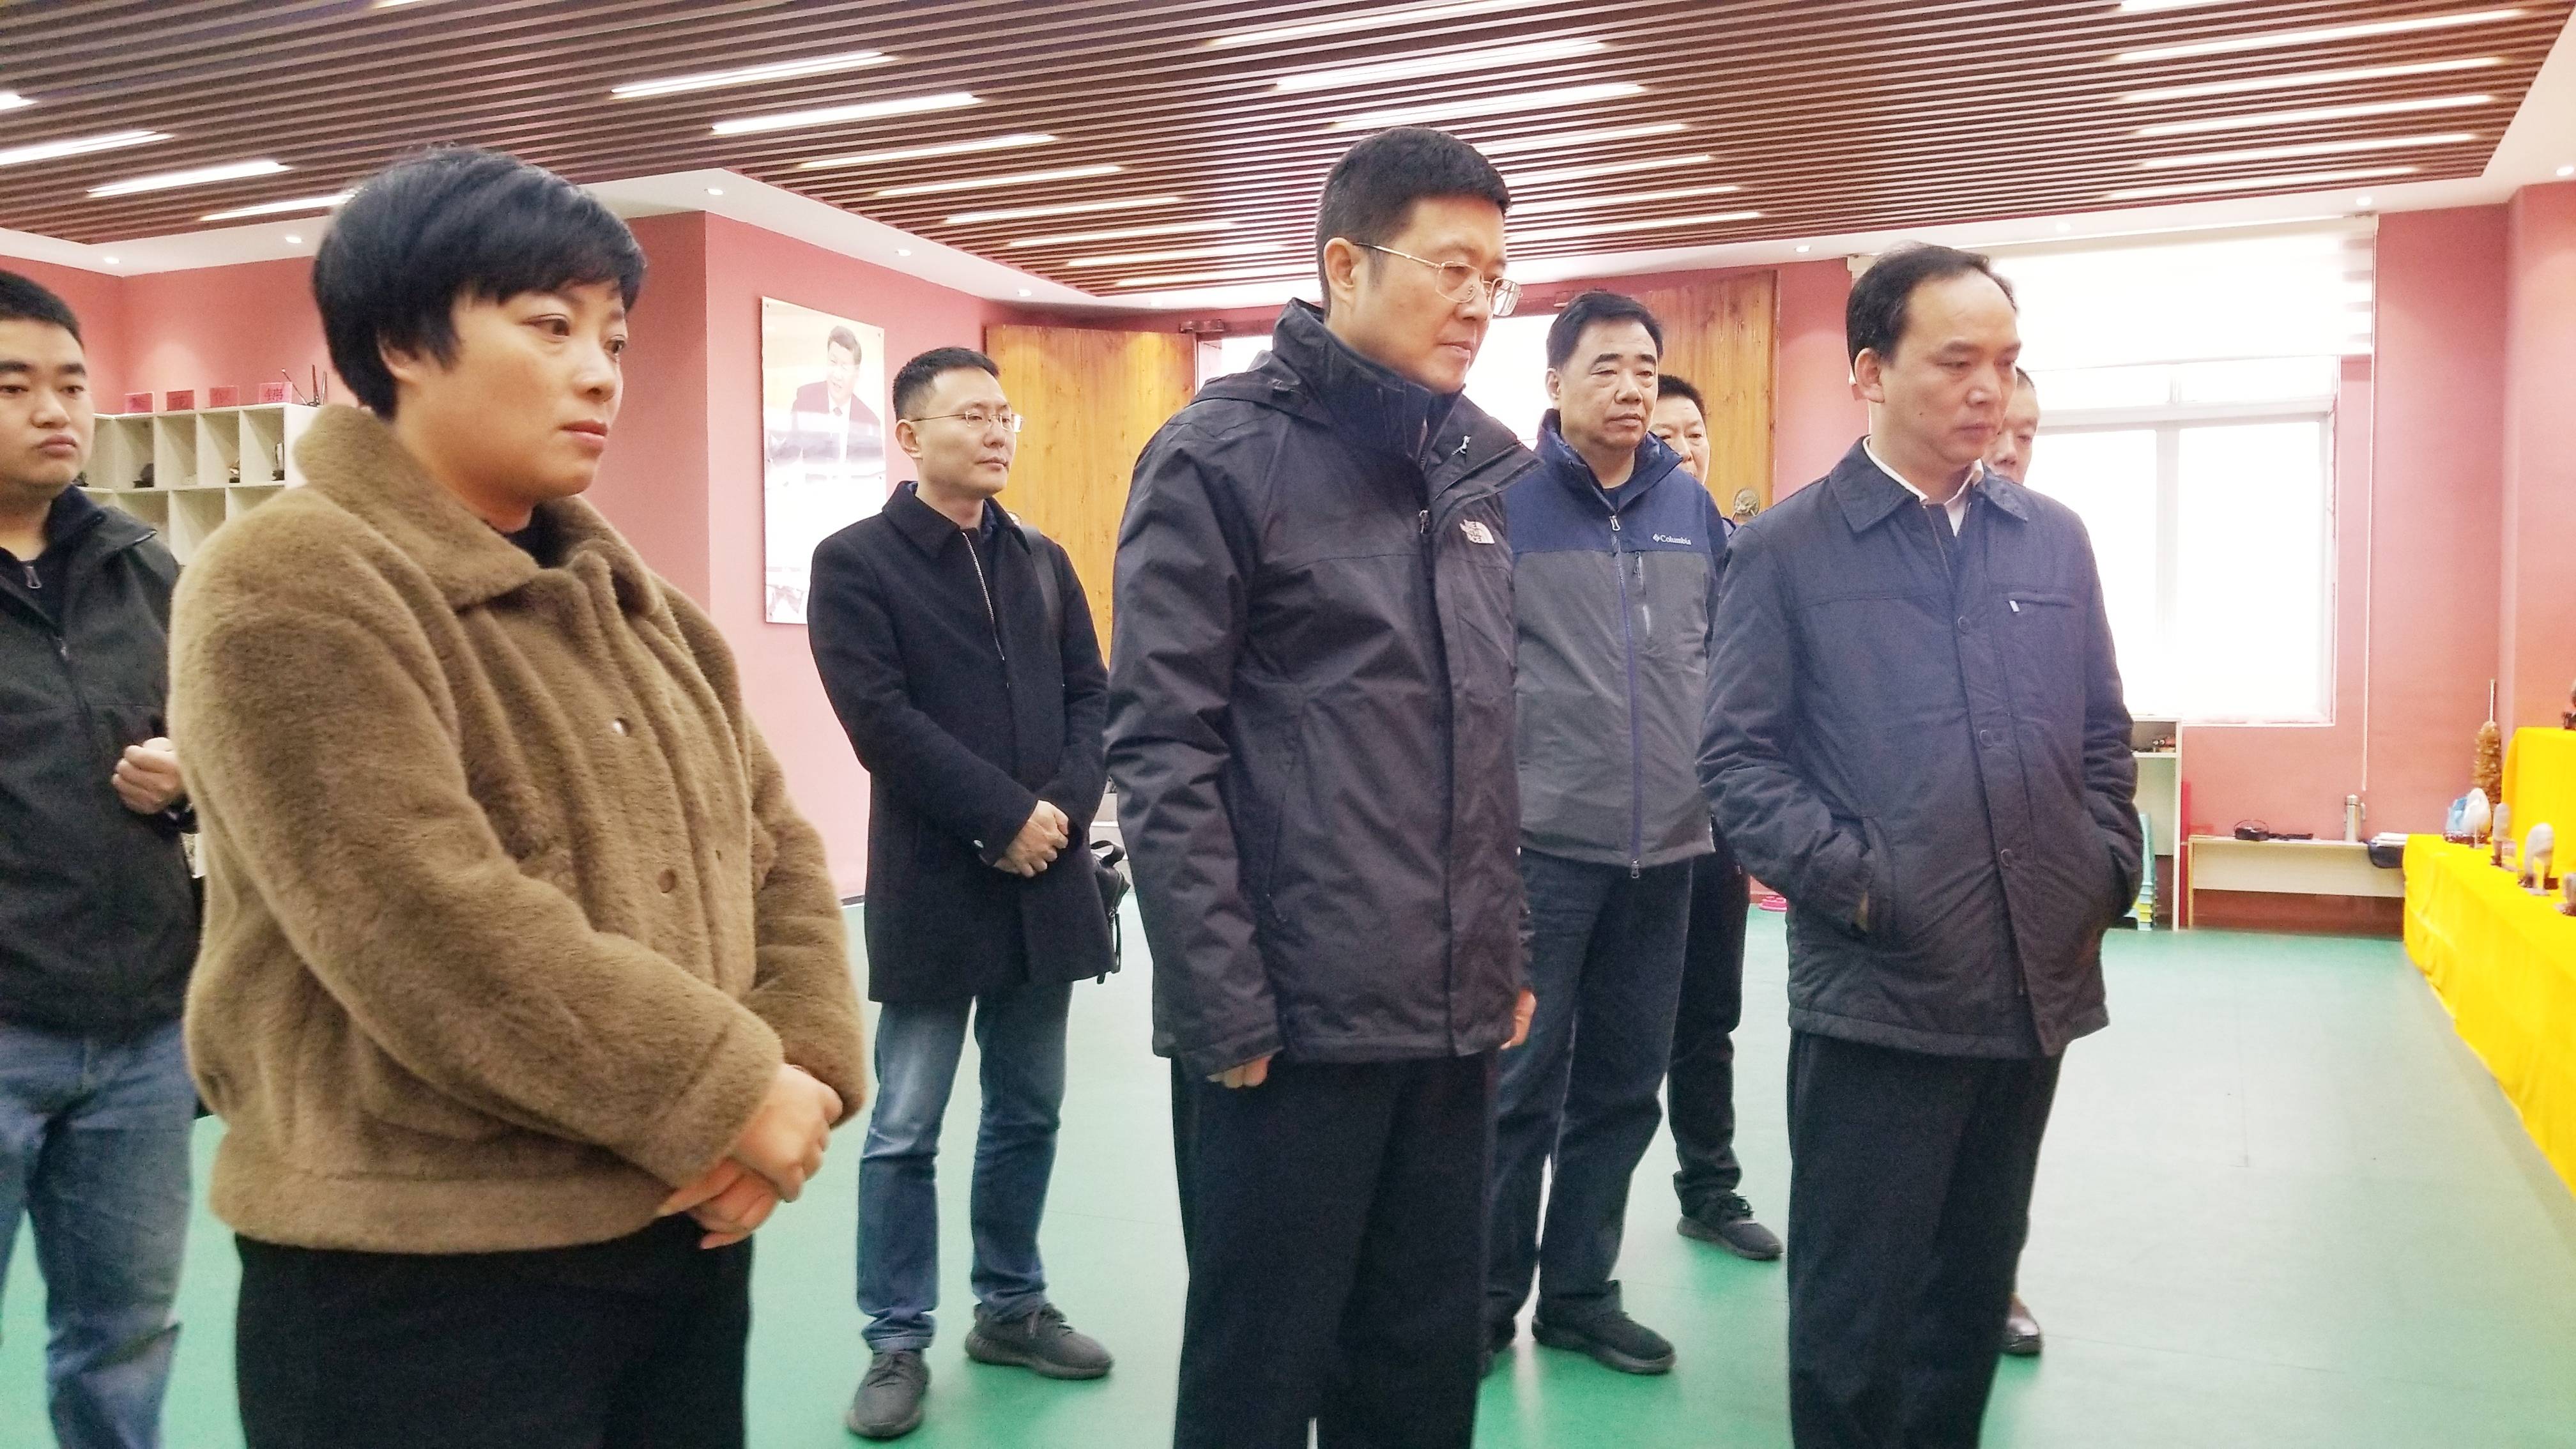 当天,上海铁路公安局帮扶工作小组在普安县委书记龙强,县委常委,组织